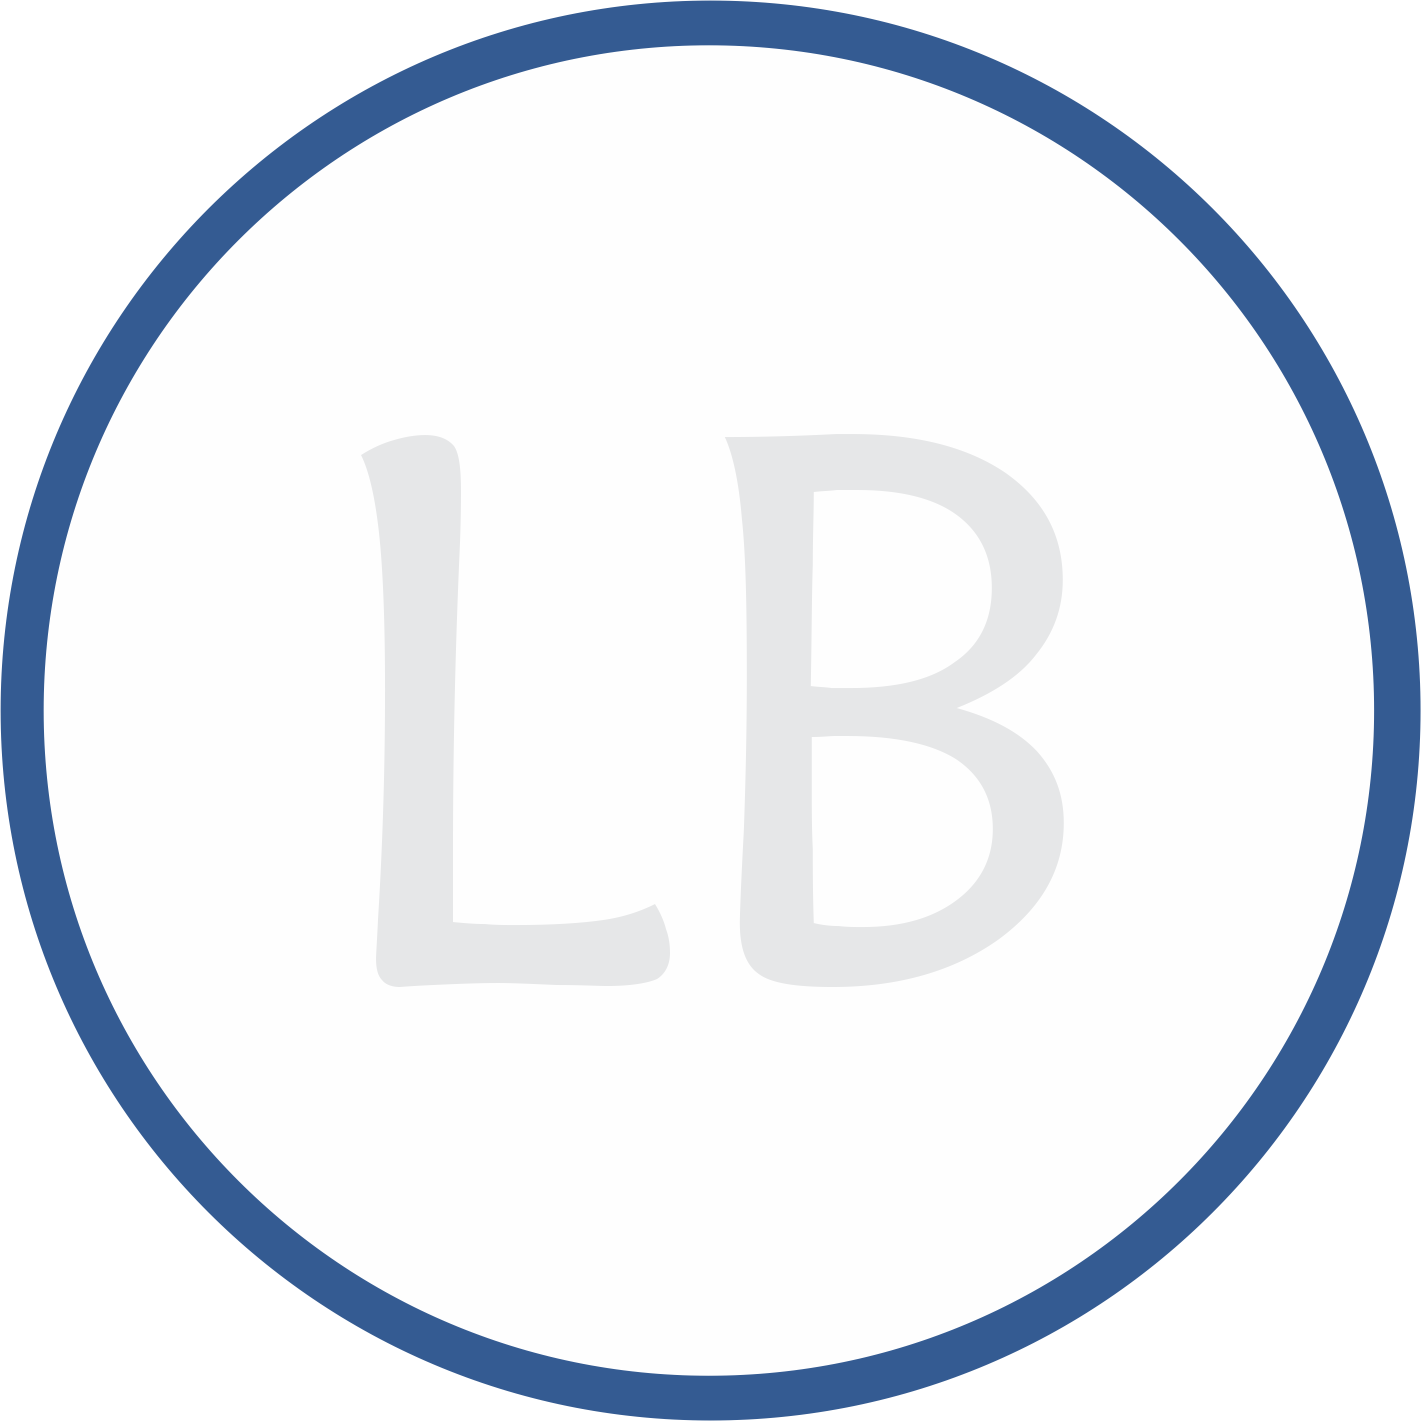 LB